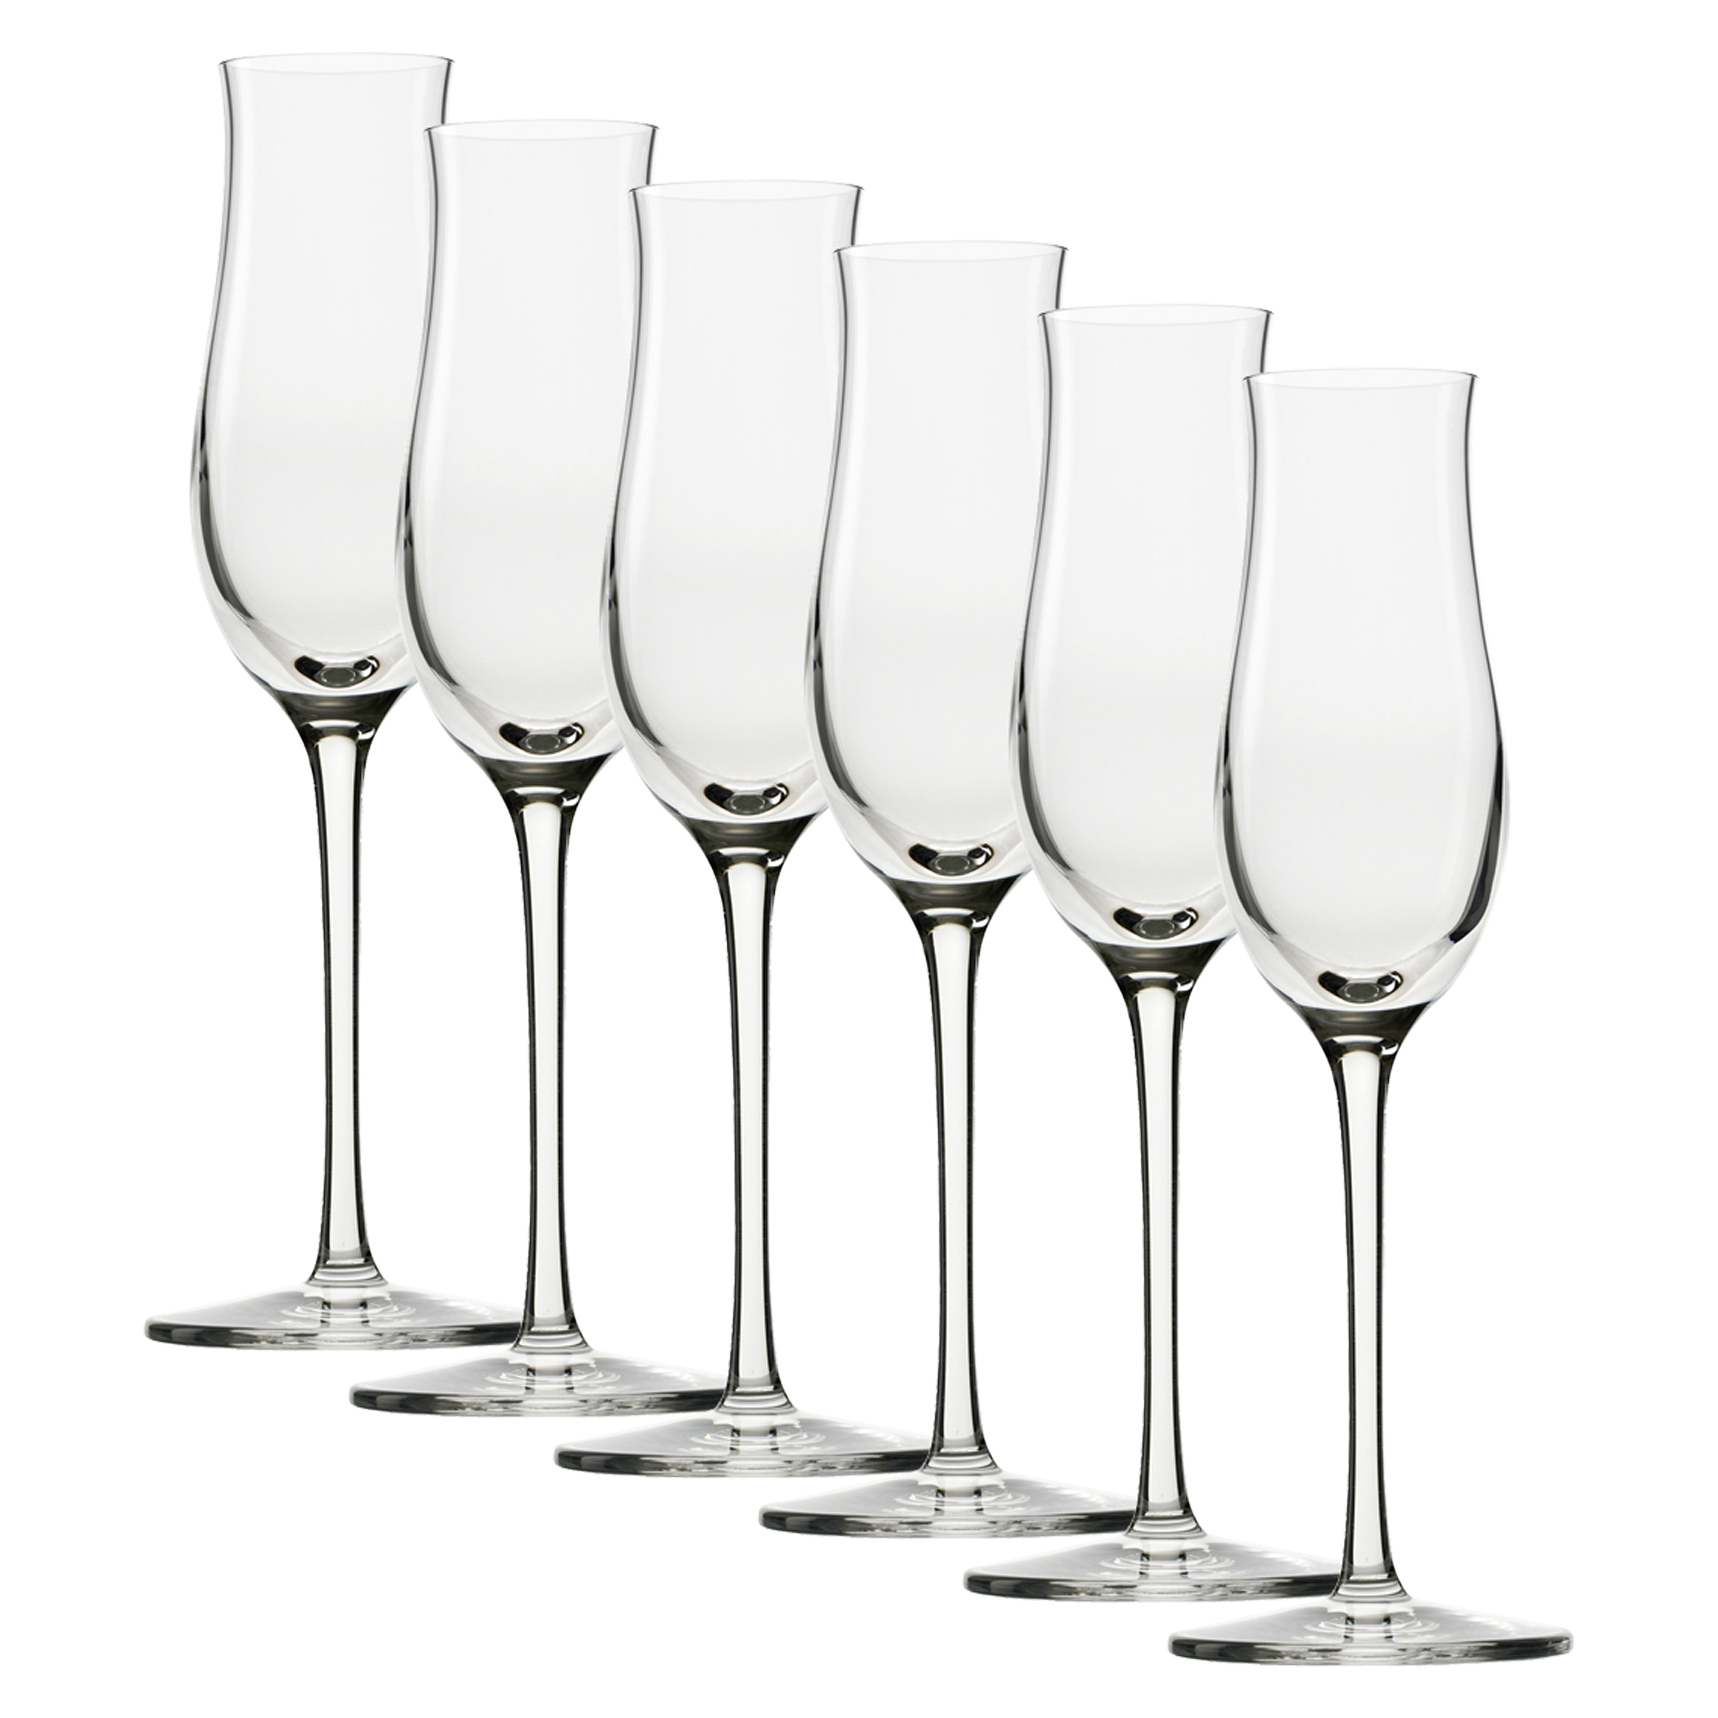 Ly Uống Rượu Brandy Stoelzle Grandezza Grappa Glass 105ml - Thiết Kế Mềm Mại, Thanh Lịch - Được Chế Tác Thủ Công - An Toàn Với Máy Rửa Chén